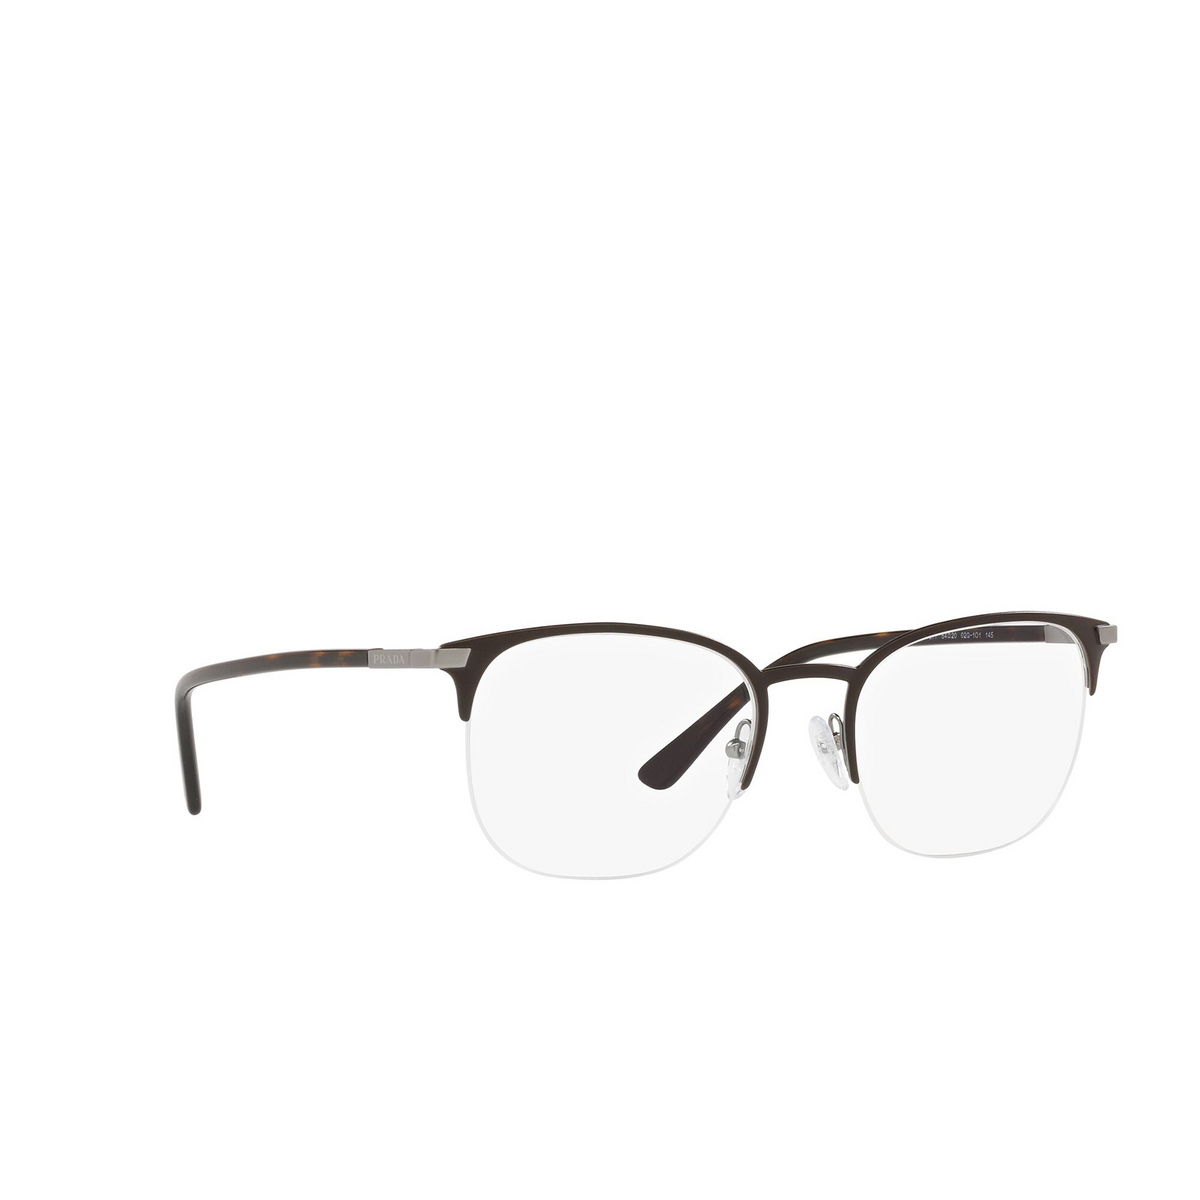 Prada® Oval Eyeglasses: PR 57YV color Matte Brown 02Q1O1 - three-quarters view.